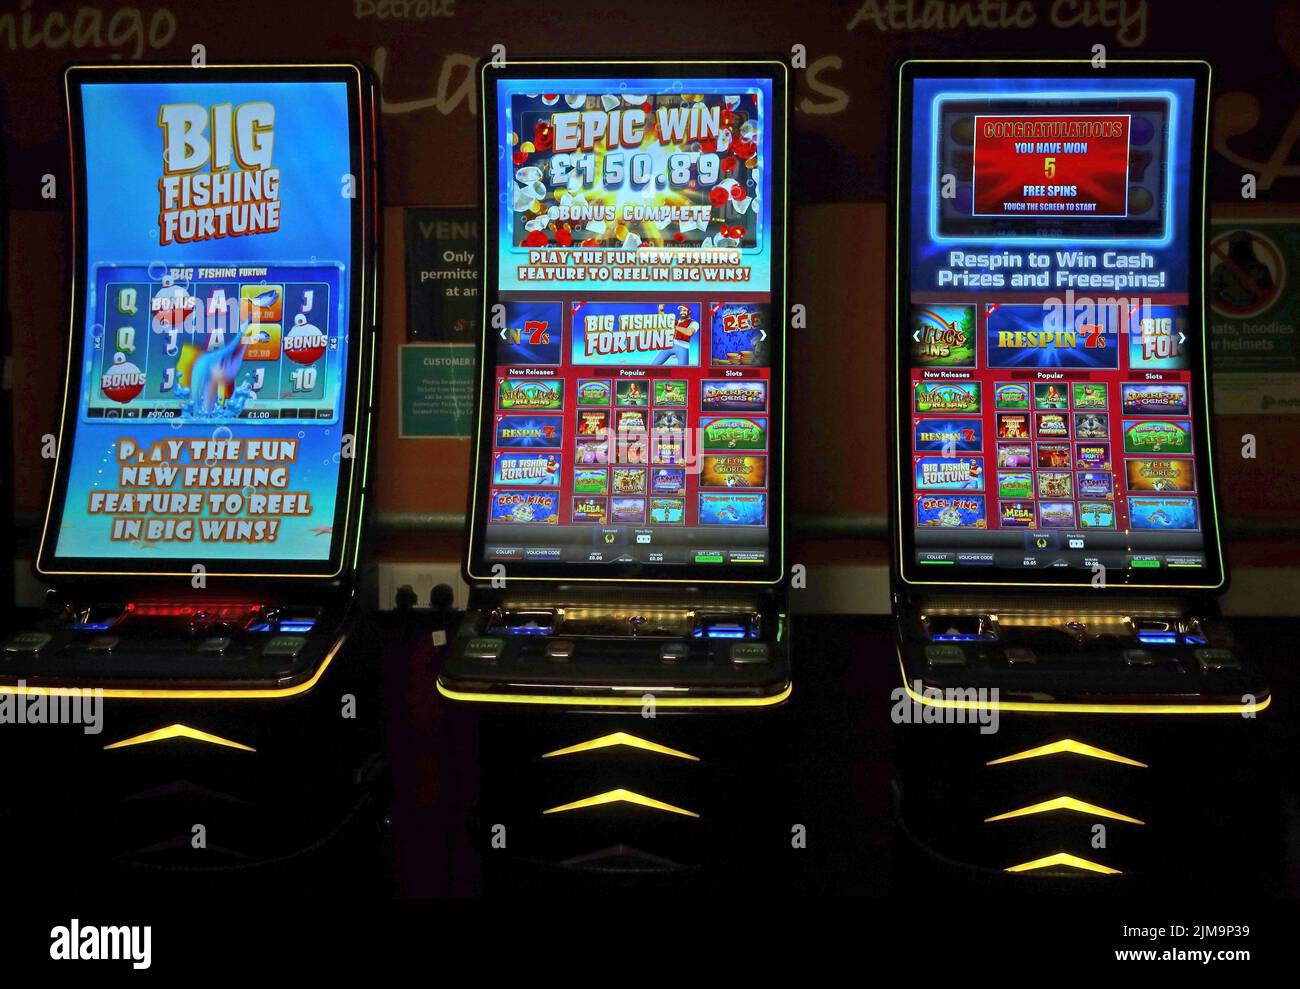 Spielautomaten, einarmige Banditen, Cash-Videospiele, bei Motorway Services M6, England, Großbritannien. Gefahren des gelegentlichen Glücksspiels Stockfoto